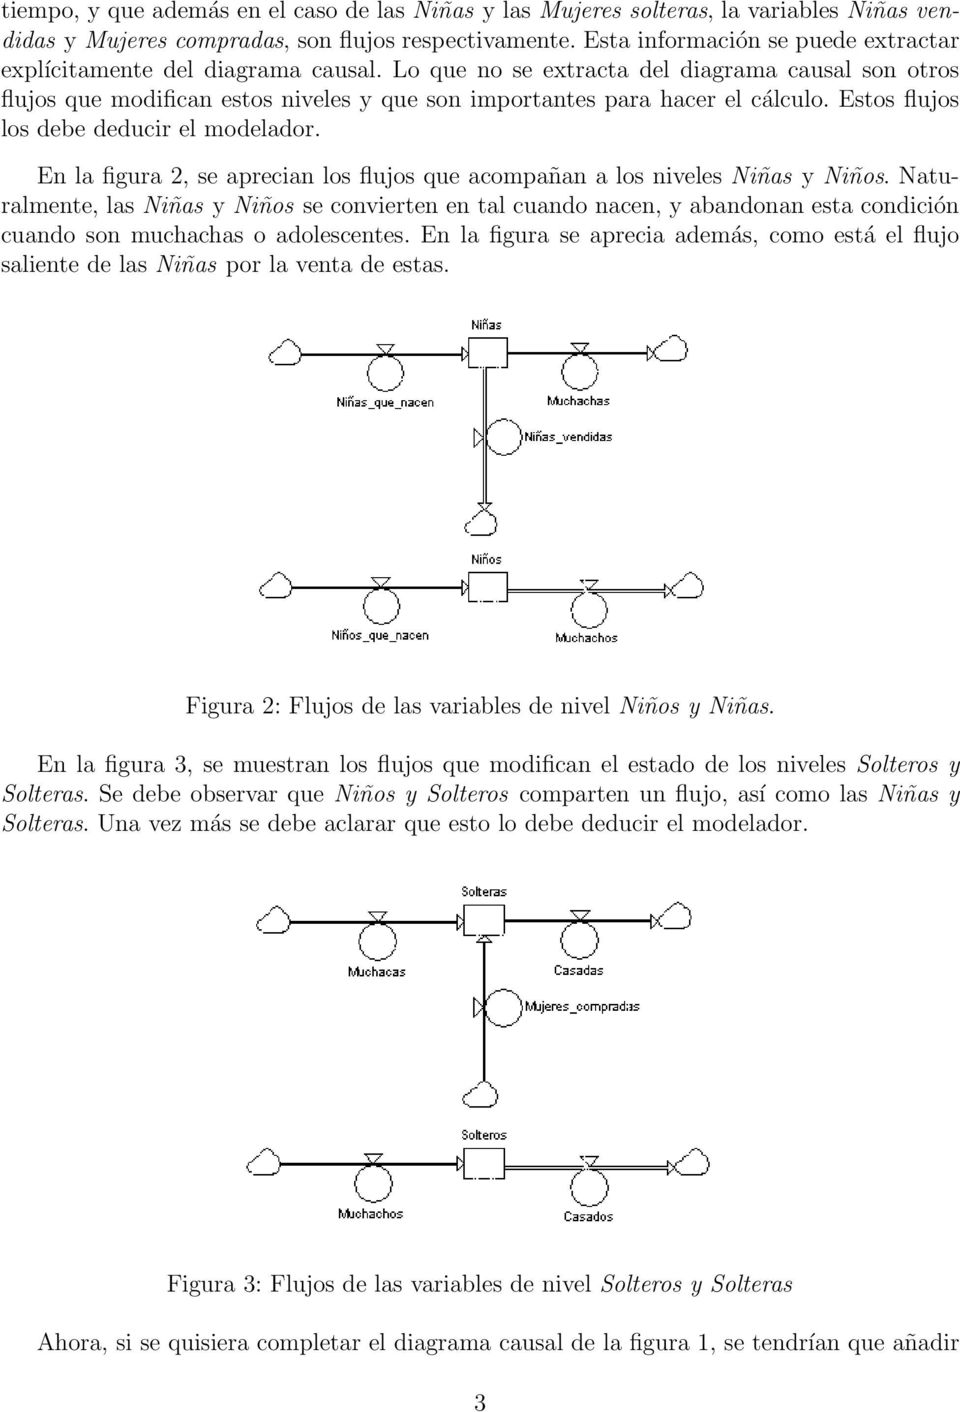 Lo que no se extracta del diagrama causal son otros flujos que modifican estos niveles y que son importantes para hacer el cálculo. Estos flujos los debe deducir el modelador.